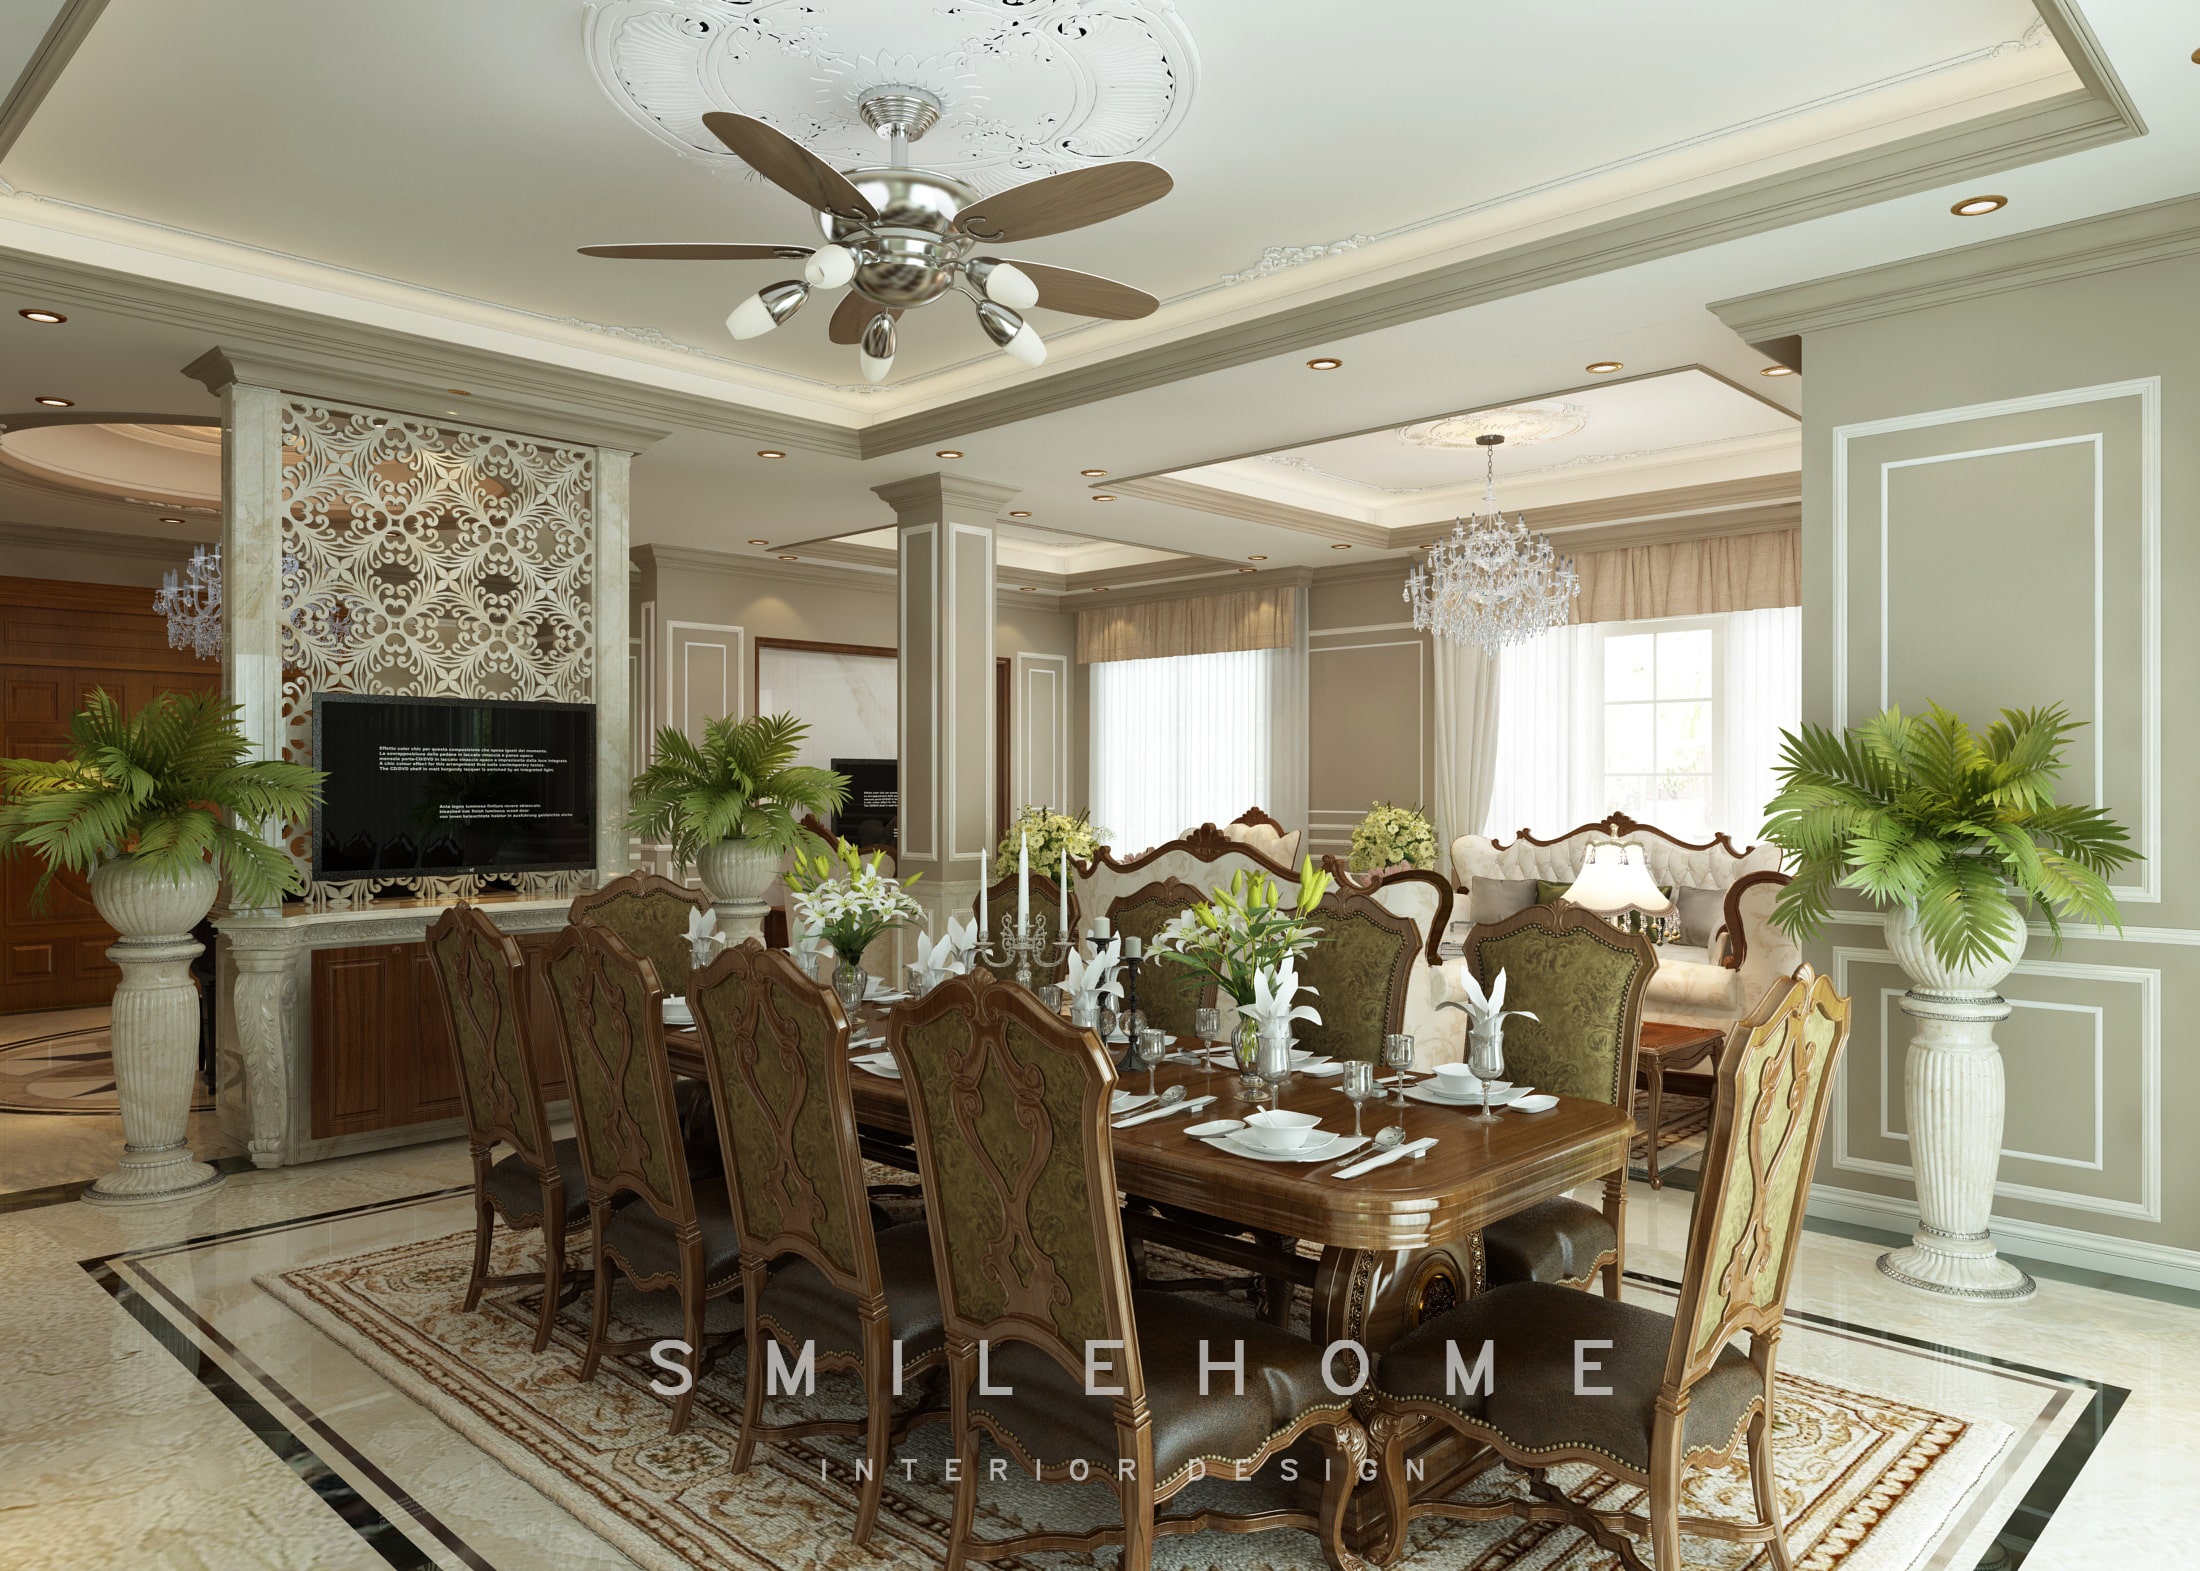 Bộ bàn ghế với chất liệu vải nỉ cao cấp tôn lên vẻ đẹp phòng khách